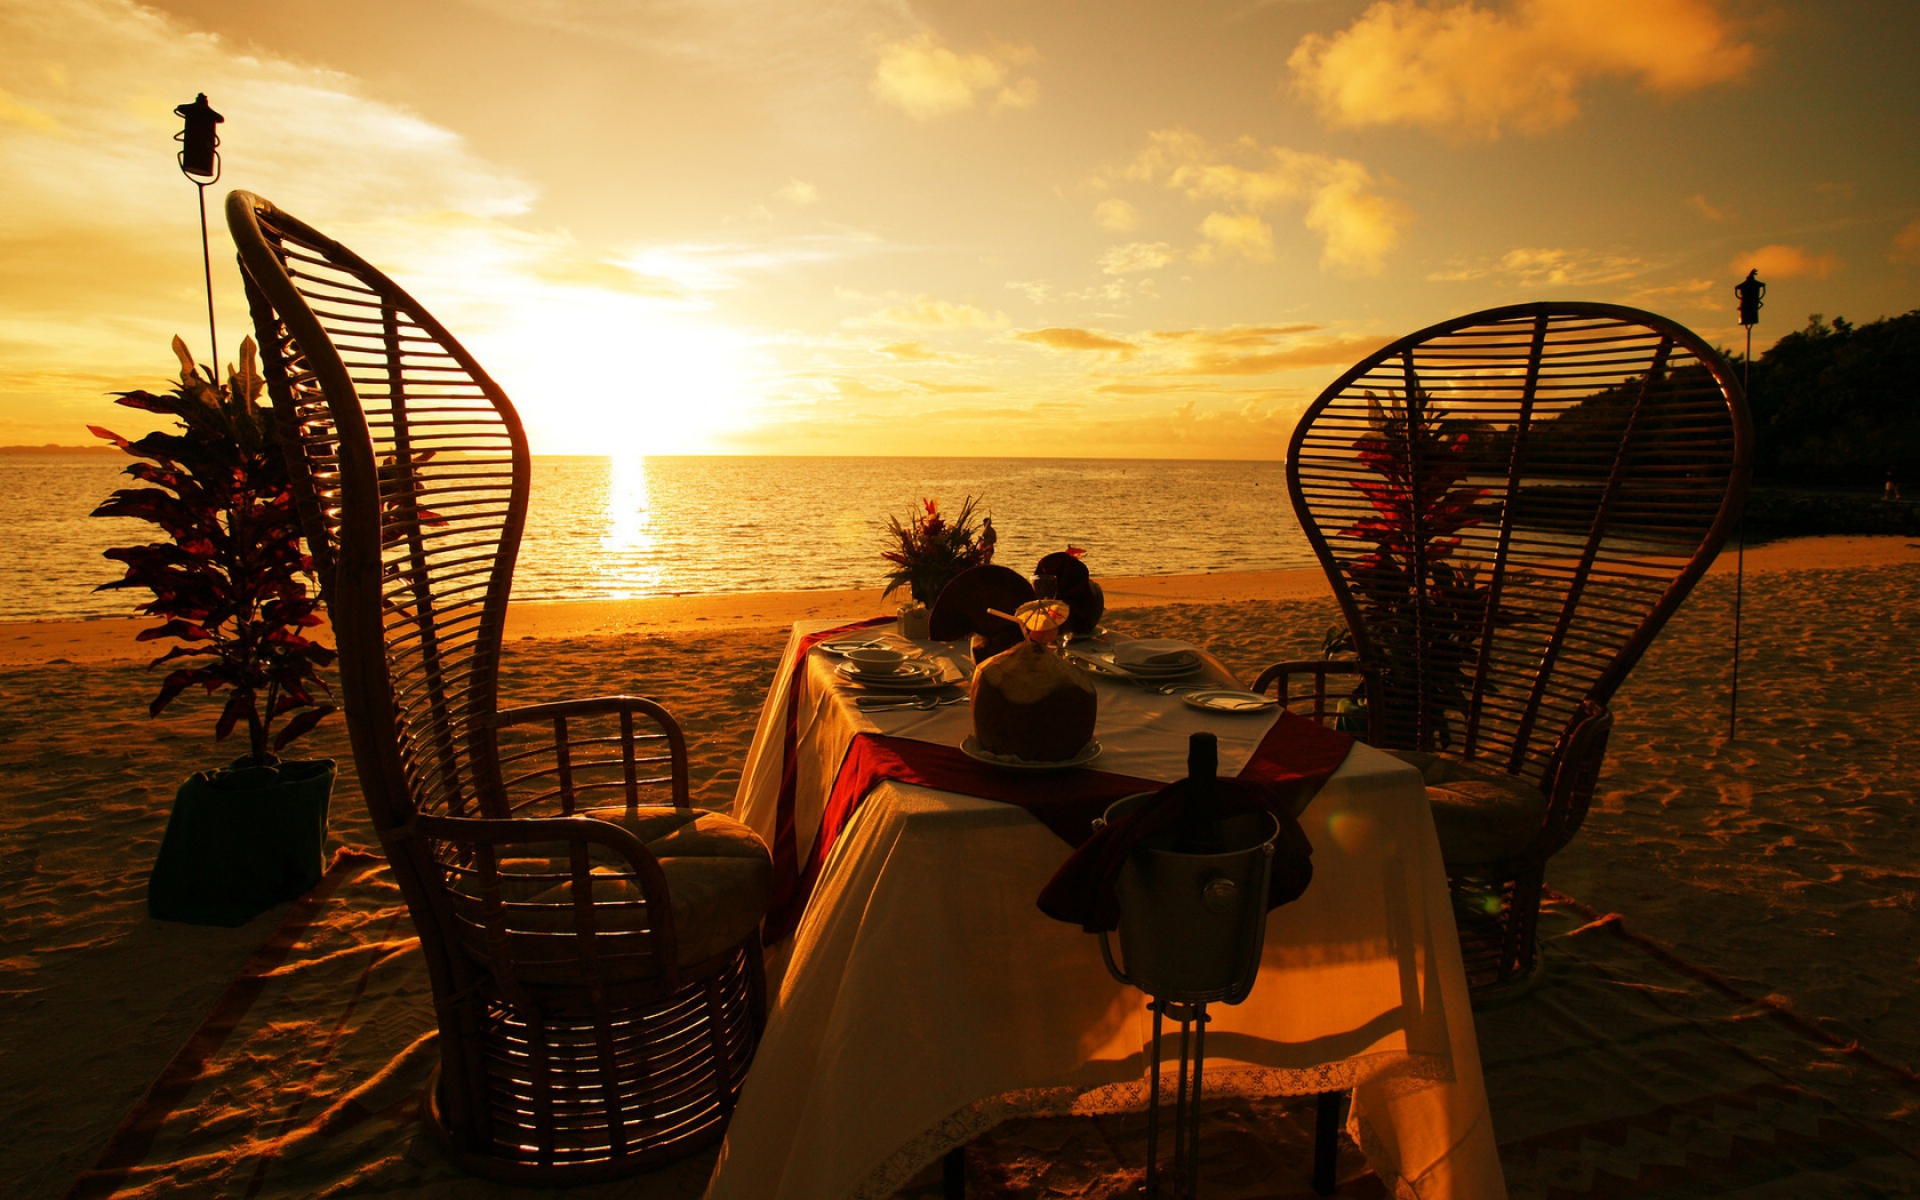 Картинки Берег, пляж, песок, закат, романтизм, встреча, стол, ужин фото и обои на рабочий стол